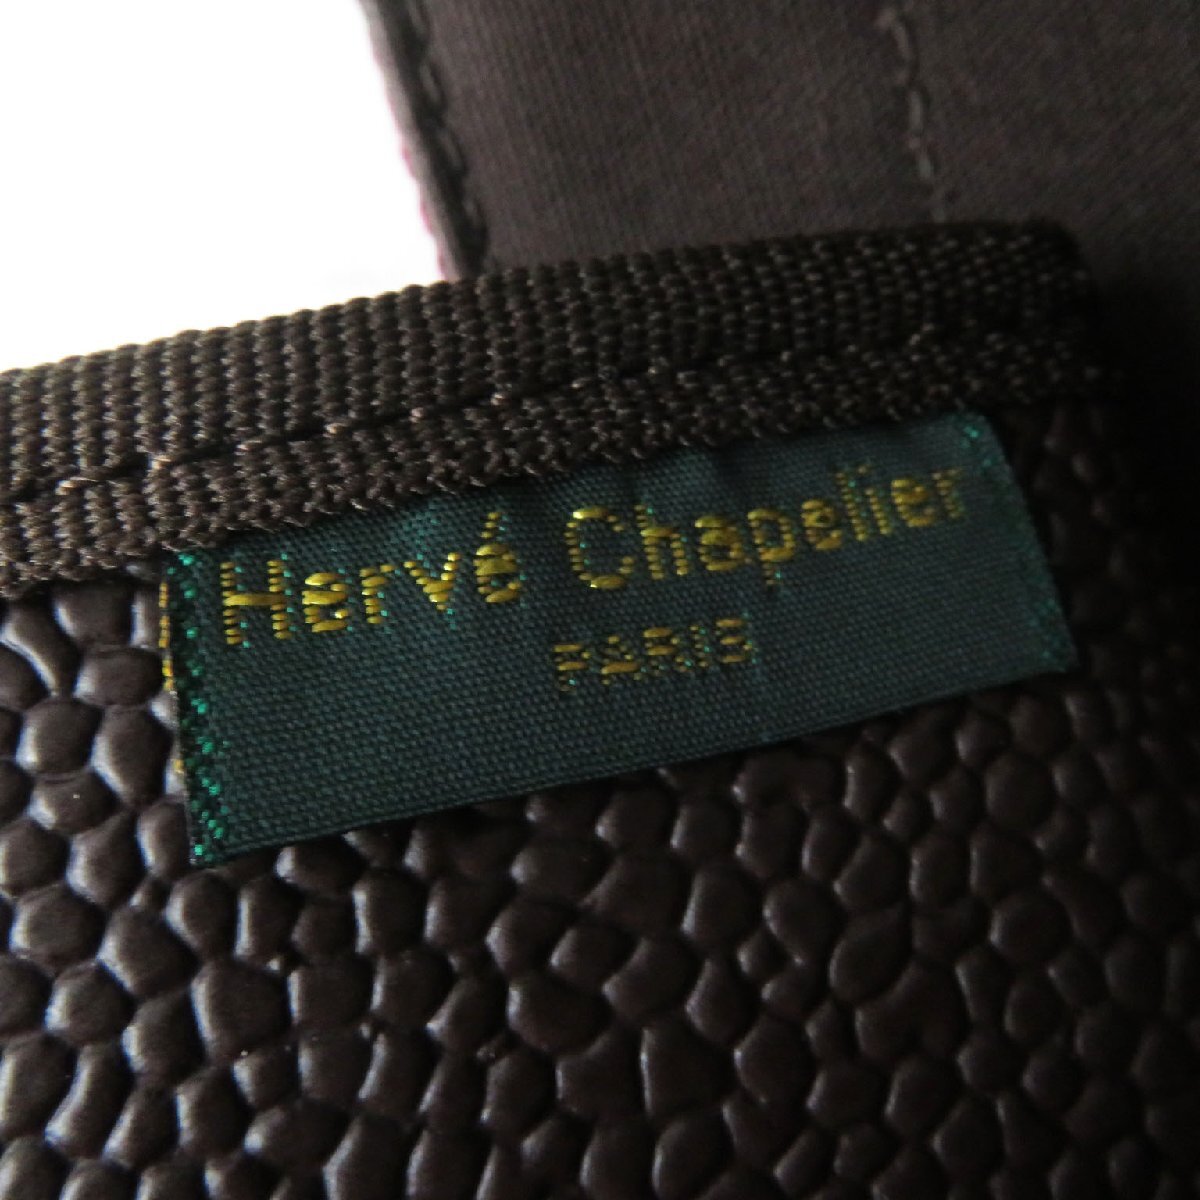  прекрасный товар HERVE CHAPELIER Herve Chapelier 725GPko-tedo парусина лодка type большая сумка Brown бордо сумка для хранения имеется . производства женский 